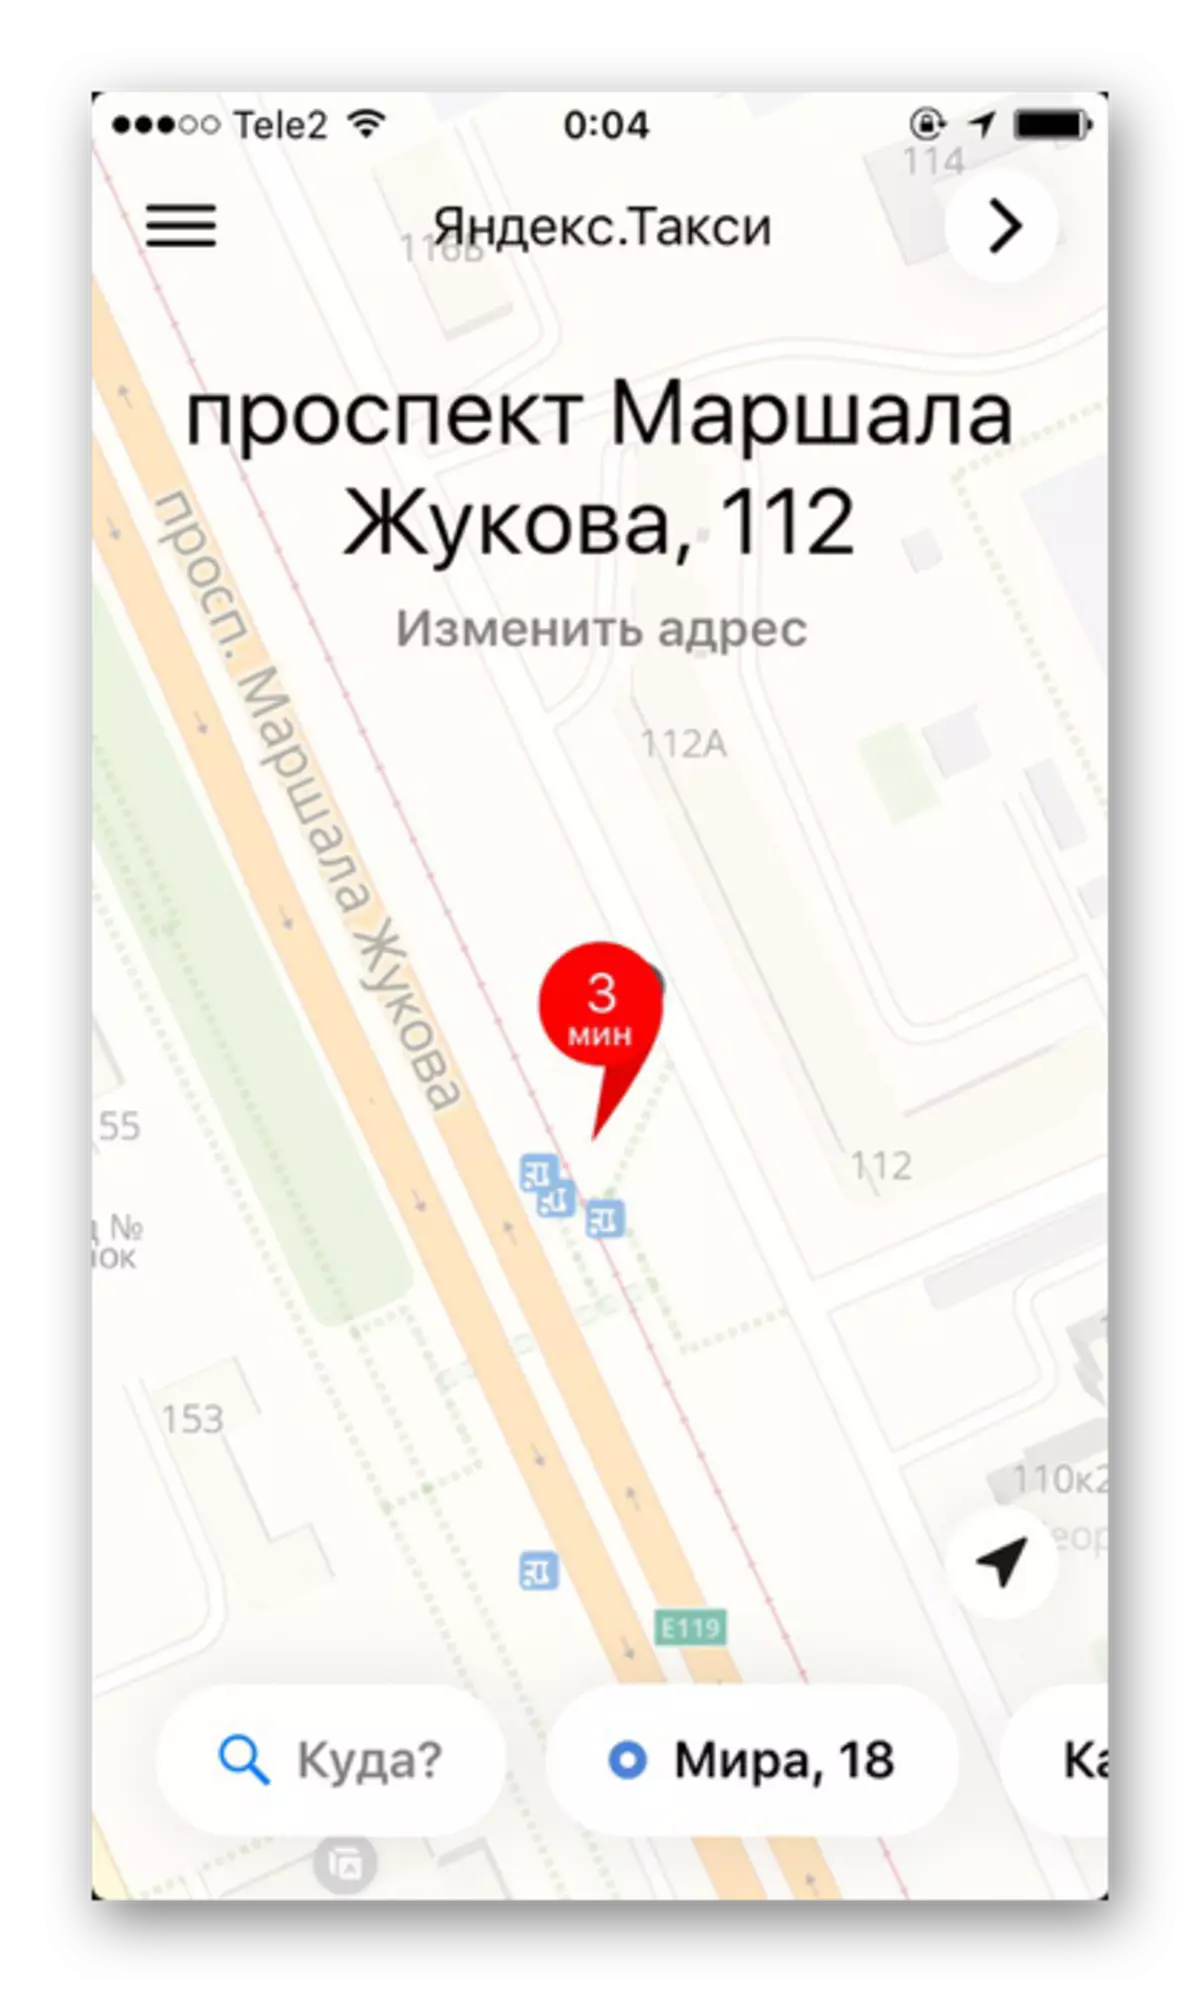 Yandex.taxi програм дээрх гудамж, байшингуудын нарийвчилсан тэмдэглэгээ бүхий газрын зураг